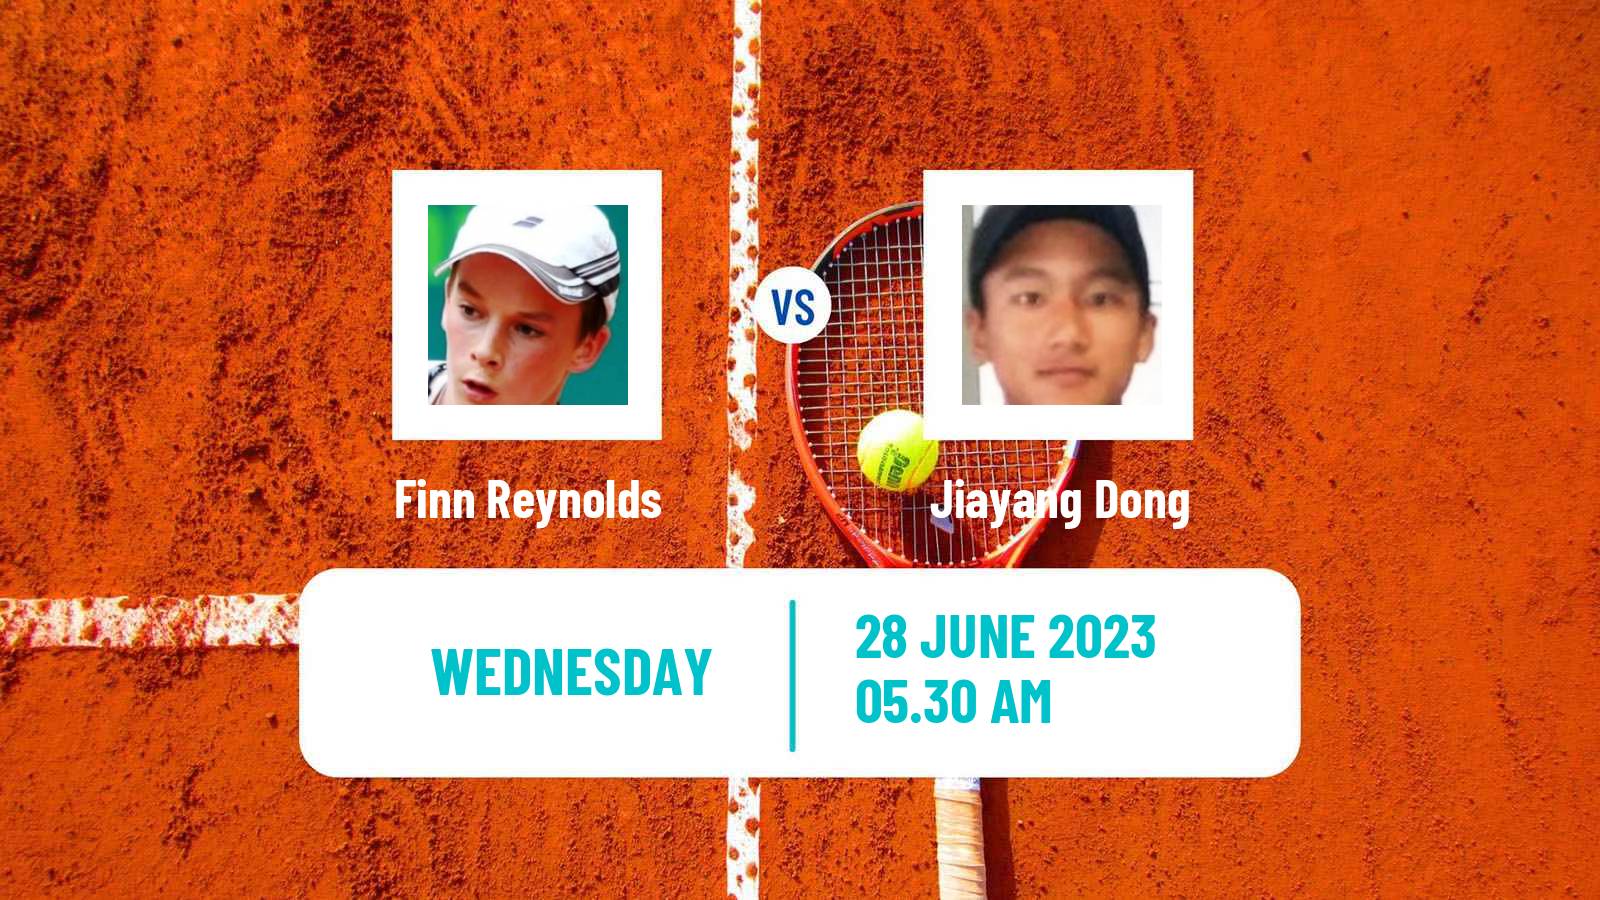 Tennis ITF M15 Tianjin 3 Men Finn Reynolds - Jiayang Dong